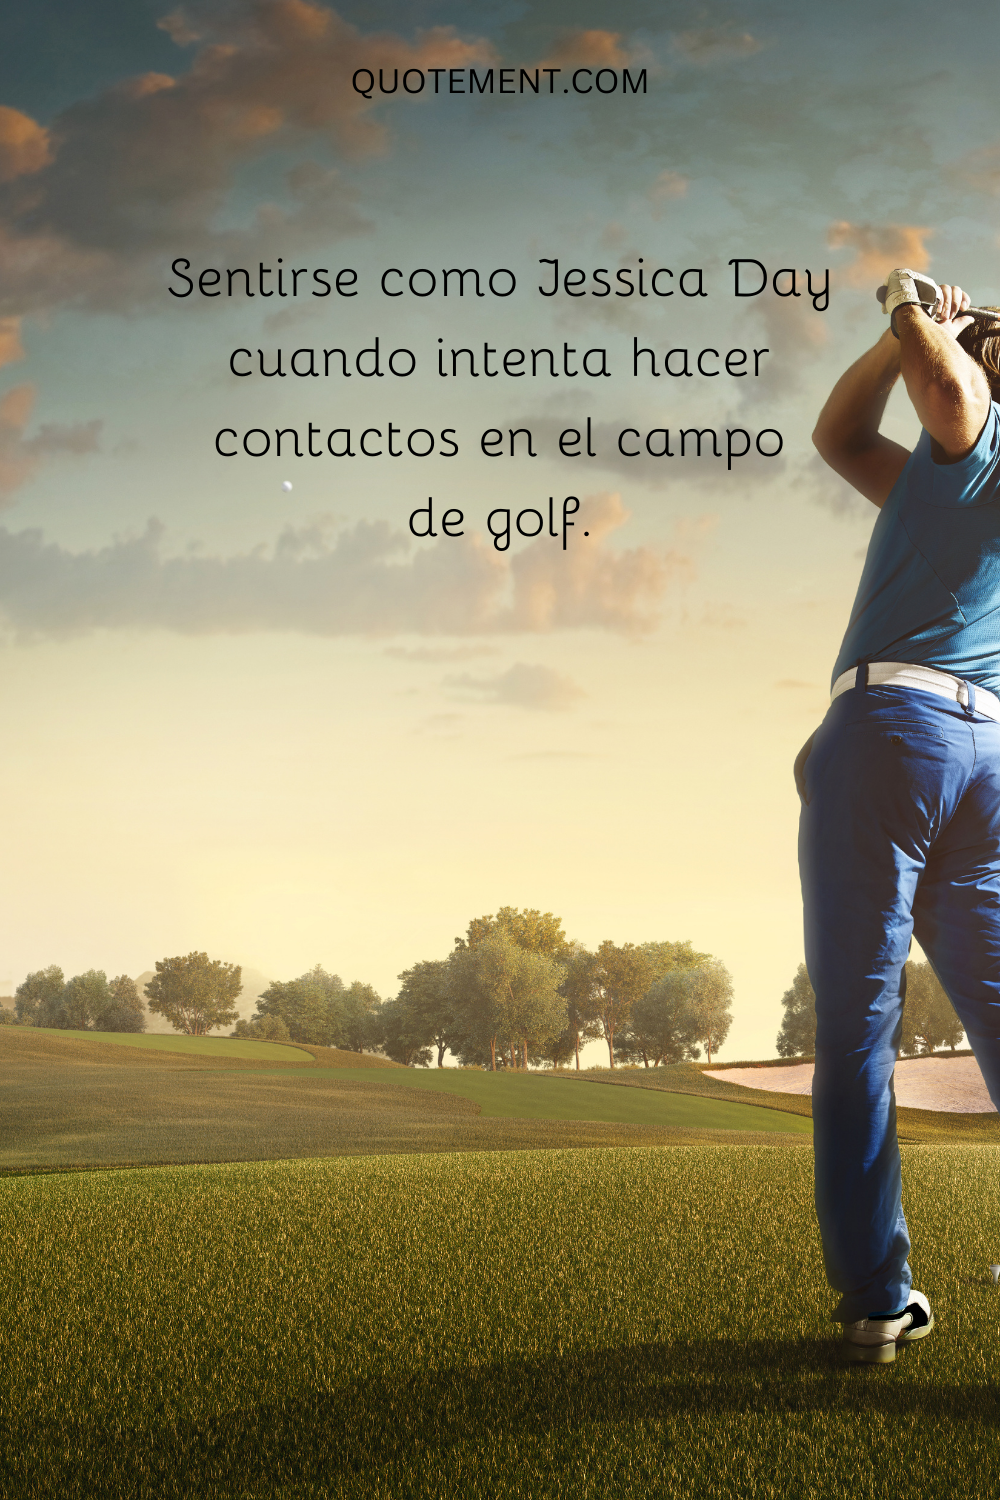 Sentirse como Jessica Day cuando intenta hacer contactos en el campo de golf.